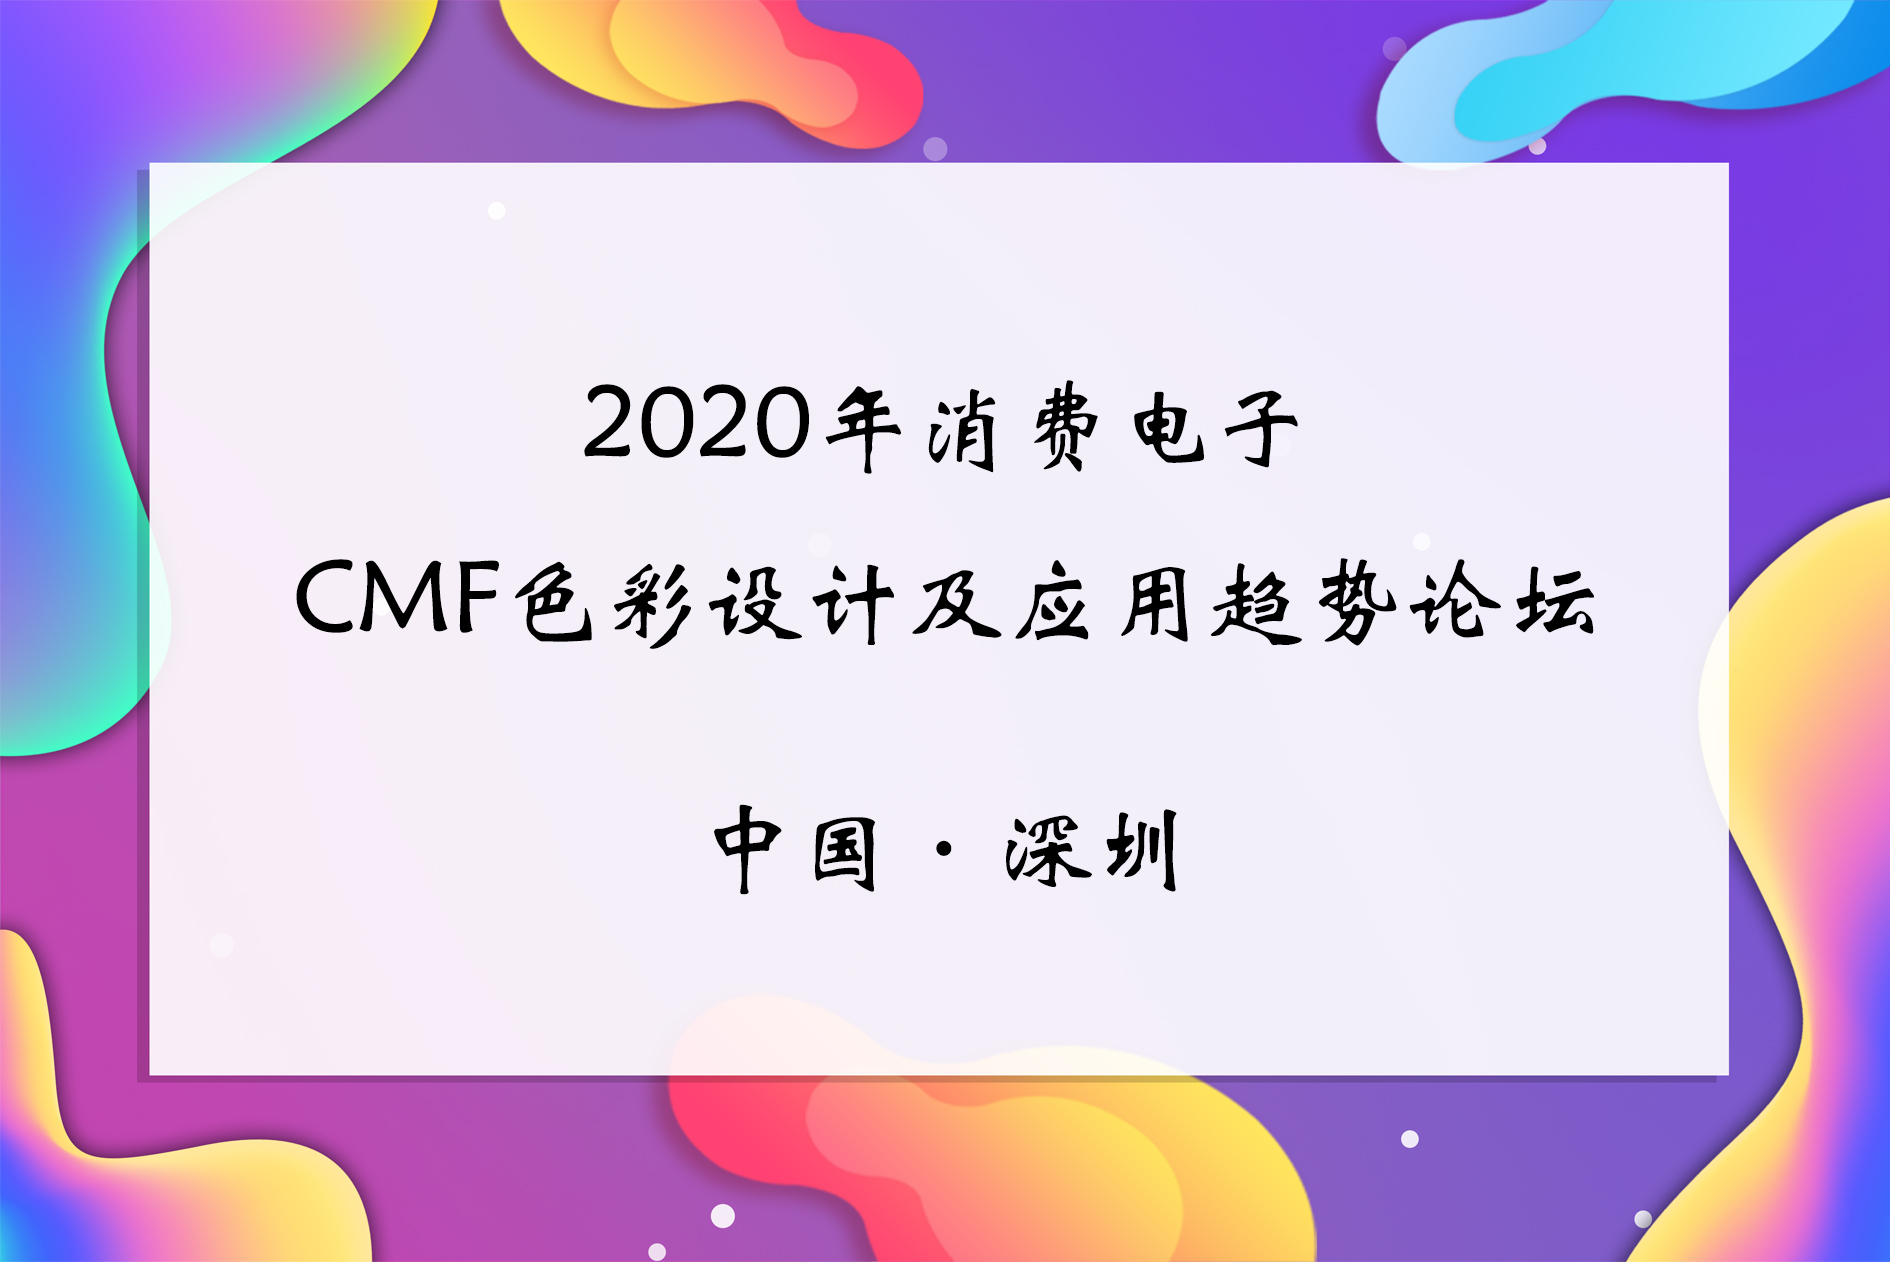 2020年消费电子CMF色彩设计及应用趋势论坛